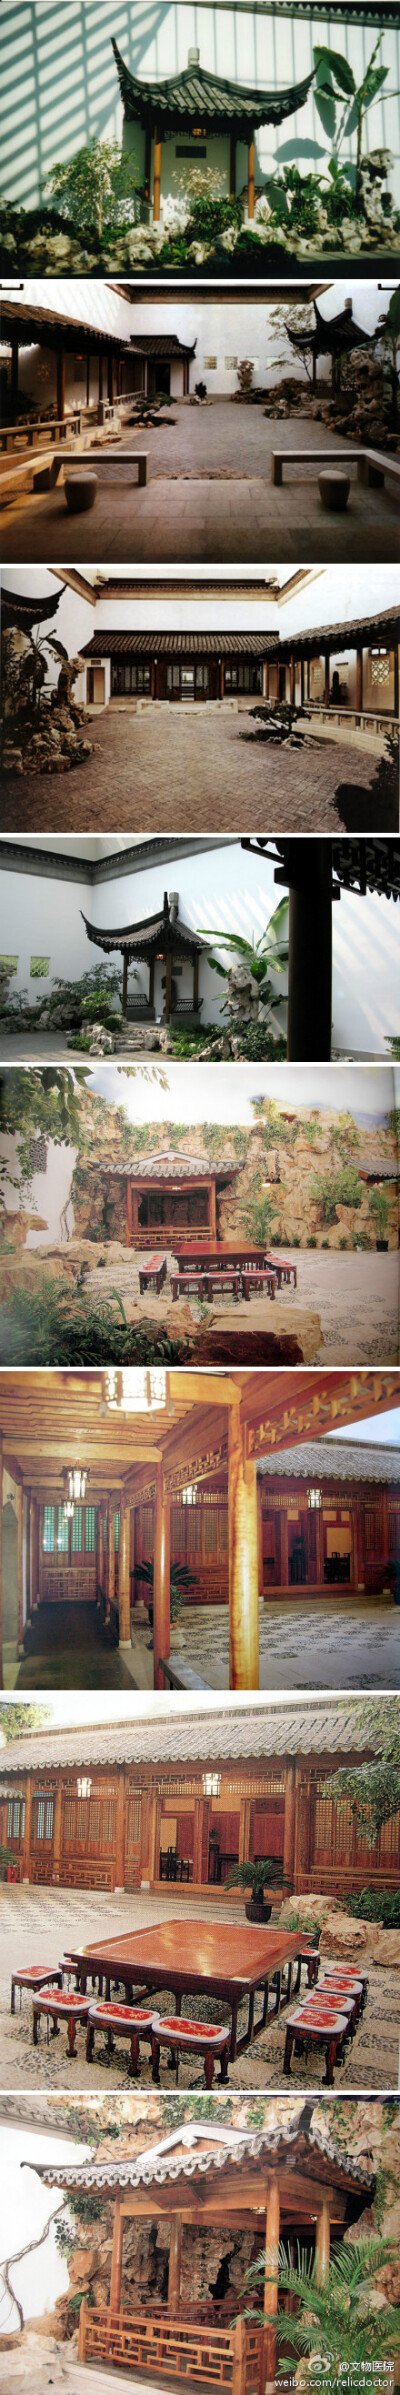 早在1979年#美国纽约大都会博物馆#就以苏州网师园内“殿春移”为蓝本建造了“明轩”(图1-3)庭院的设计吸收明代绘画山水小品特色，布局紧凑、淡雅清新、集中体现了苏州园林的精华。其实在#上海博物馆#地下也有园林（…